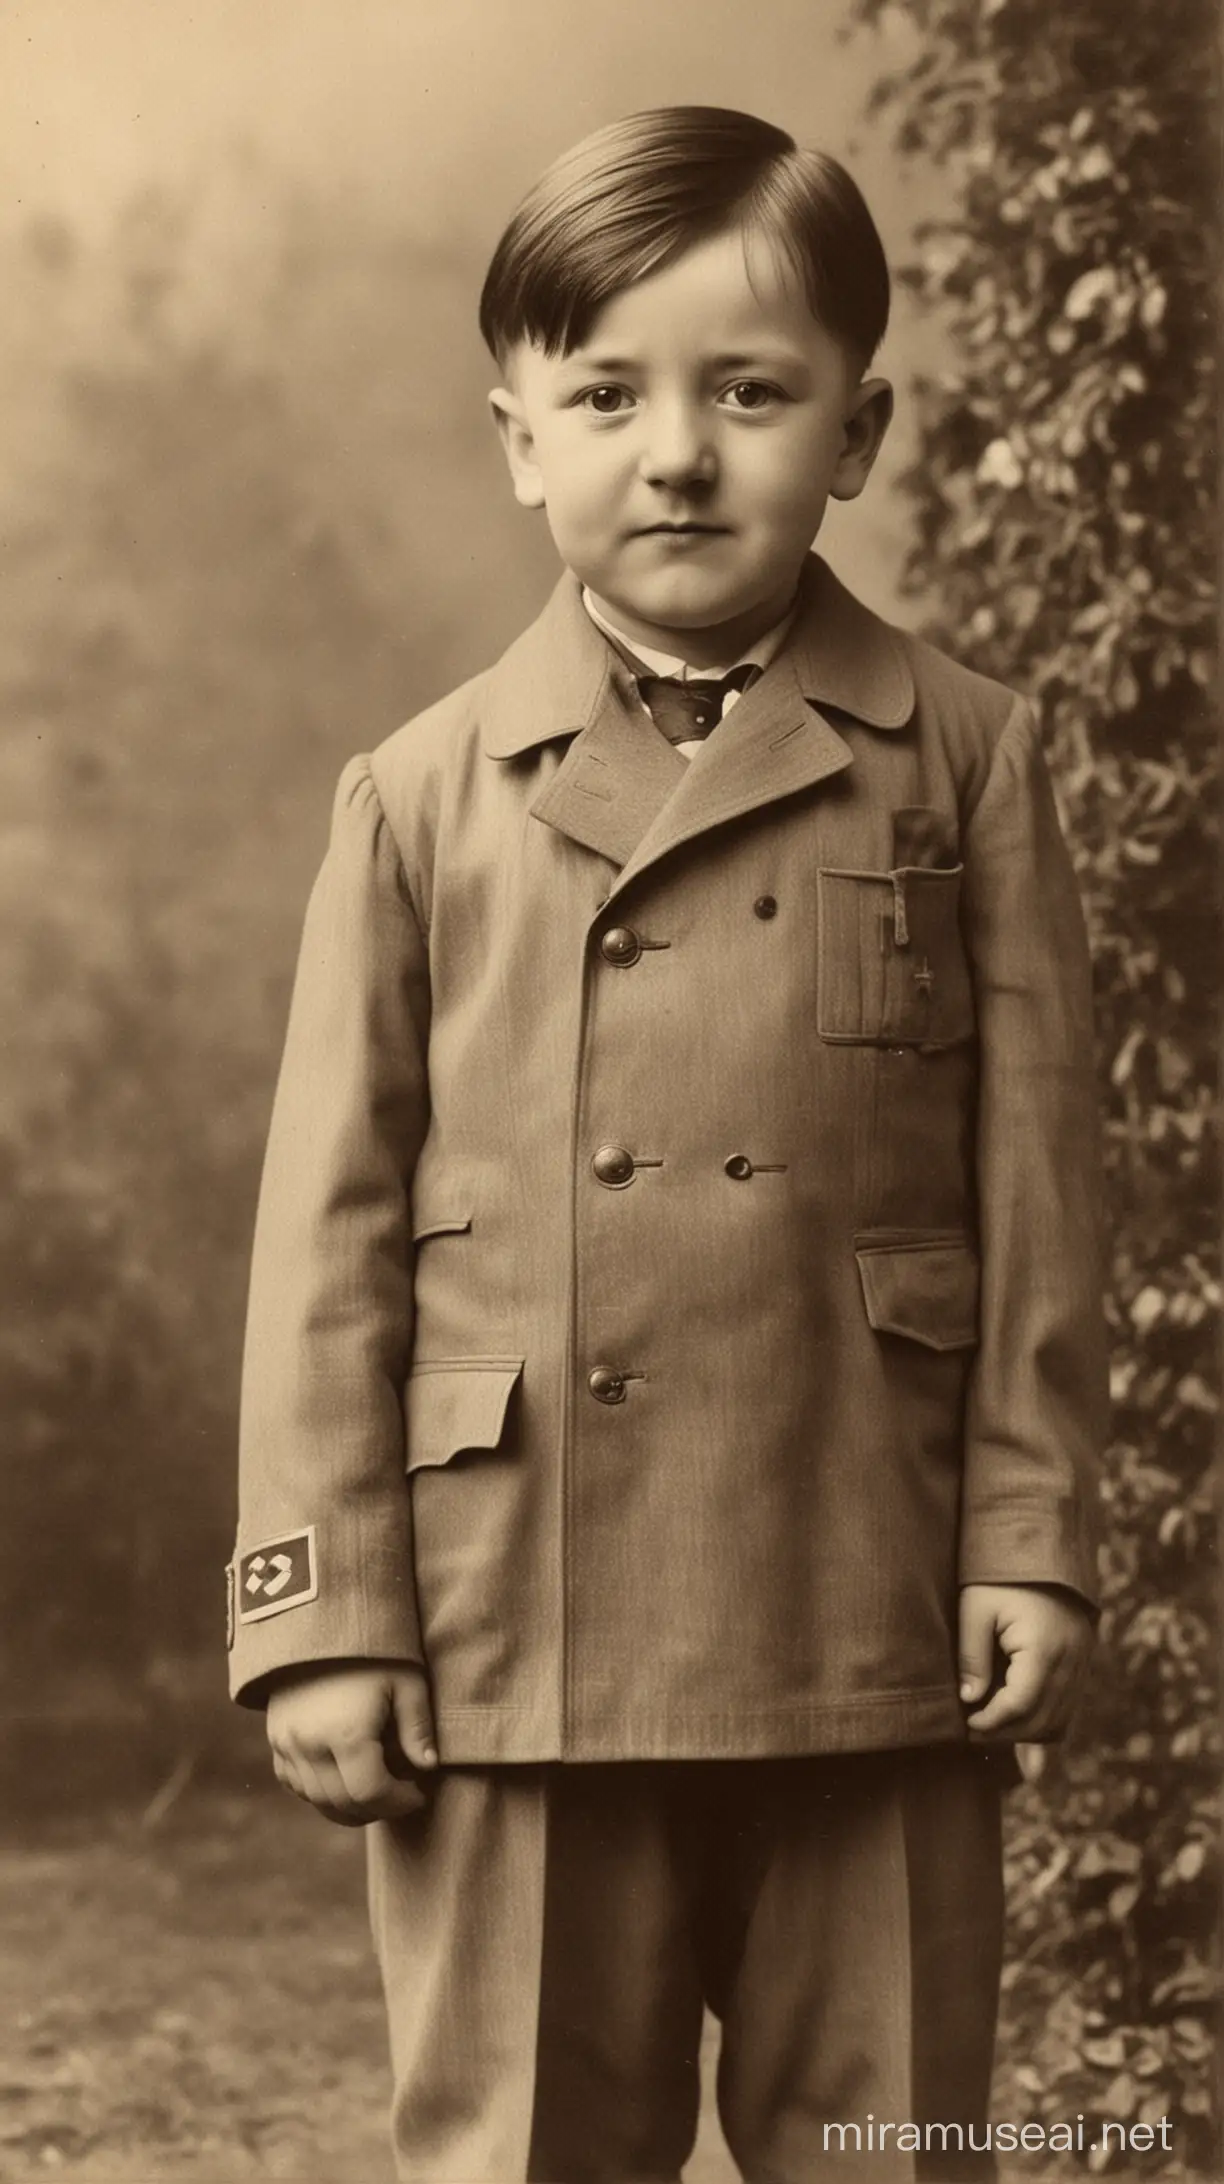 Visual: Adolf Hitler as a child 